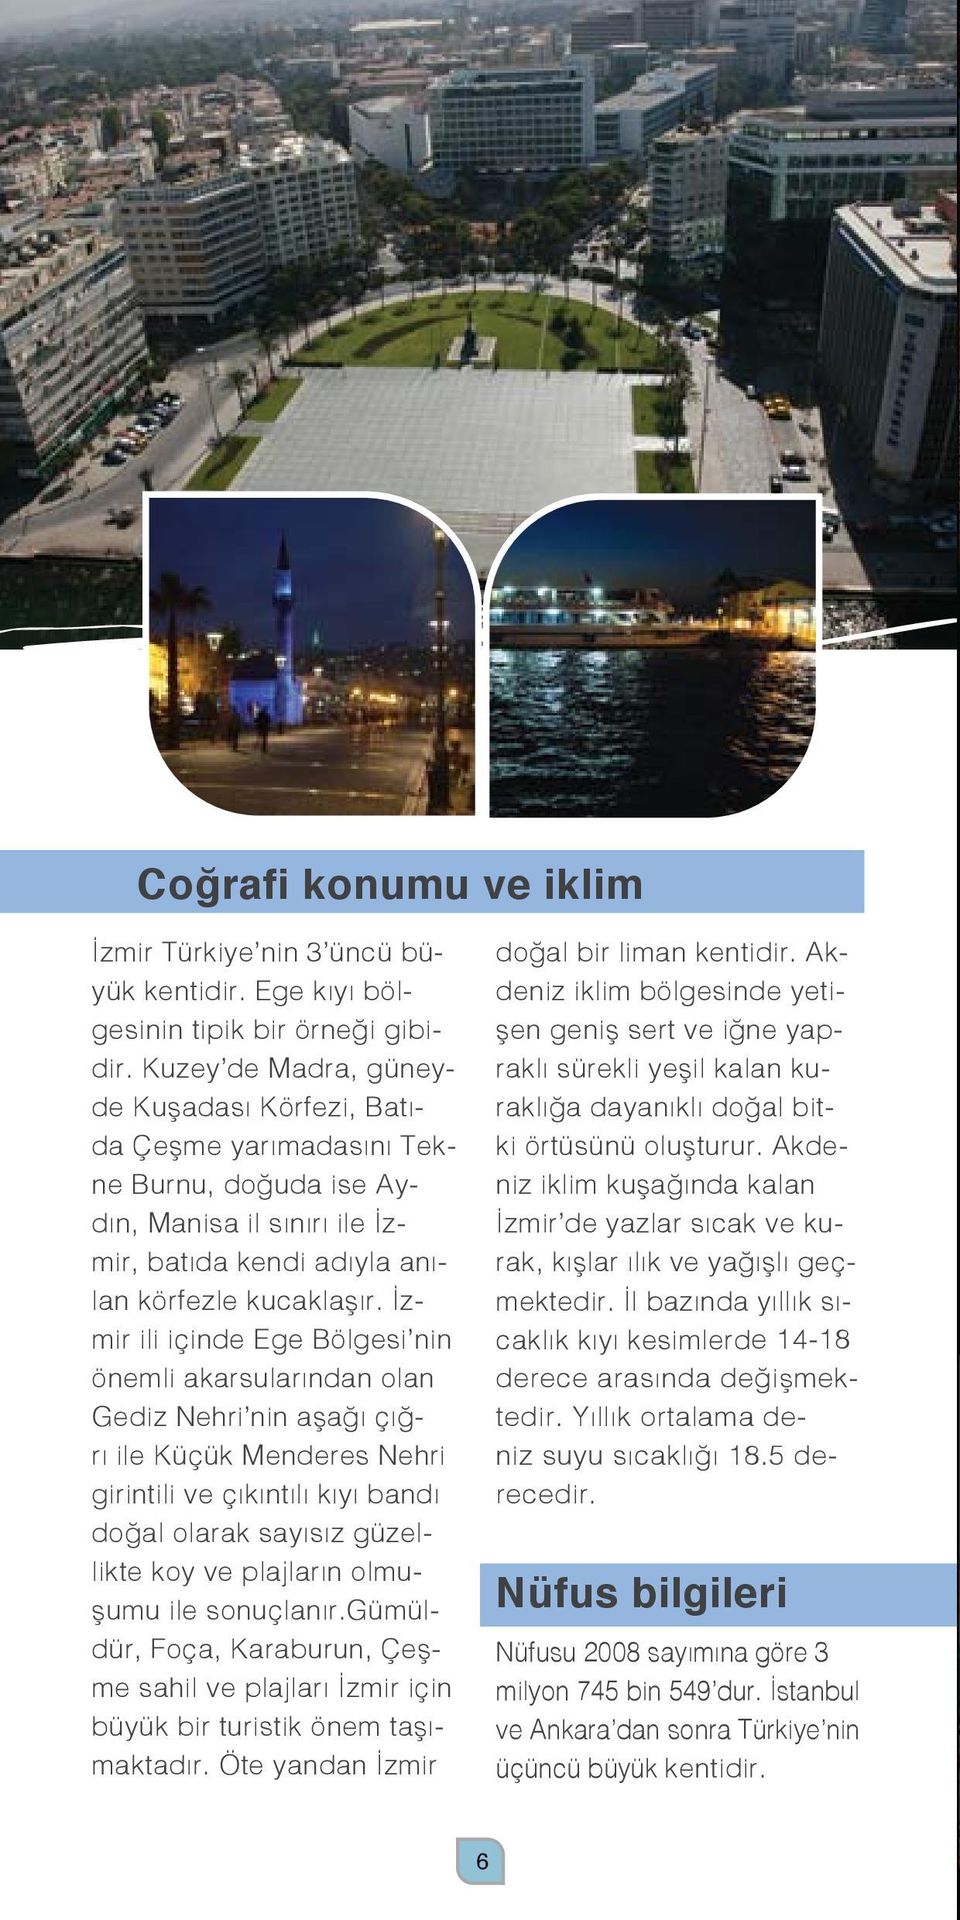 İzmir ili içinde Ege Bölgesi nin önemli akarsularından olan Gediz Nehri nin aşağı çığrı ile Küçük Menderes Nehri girintili ve çıkıntılı kıyı bandı doğal olarak sayısız güzellikte koy ve plajların